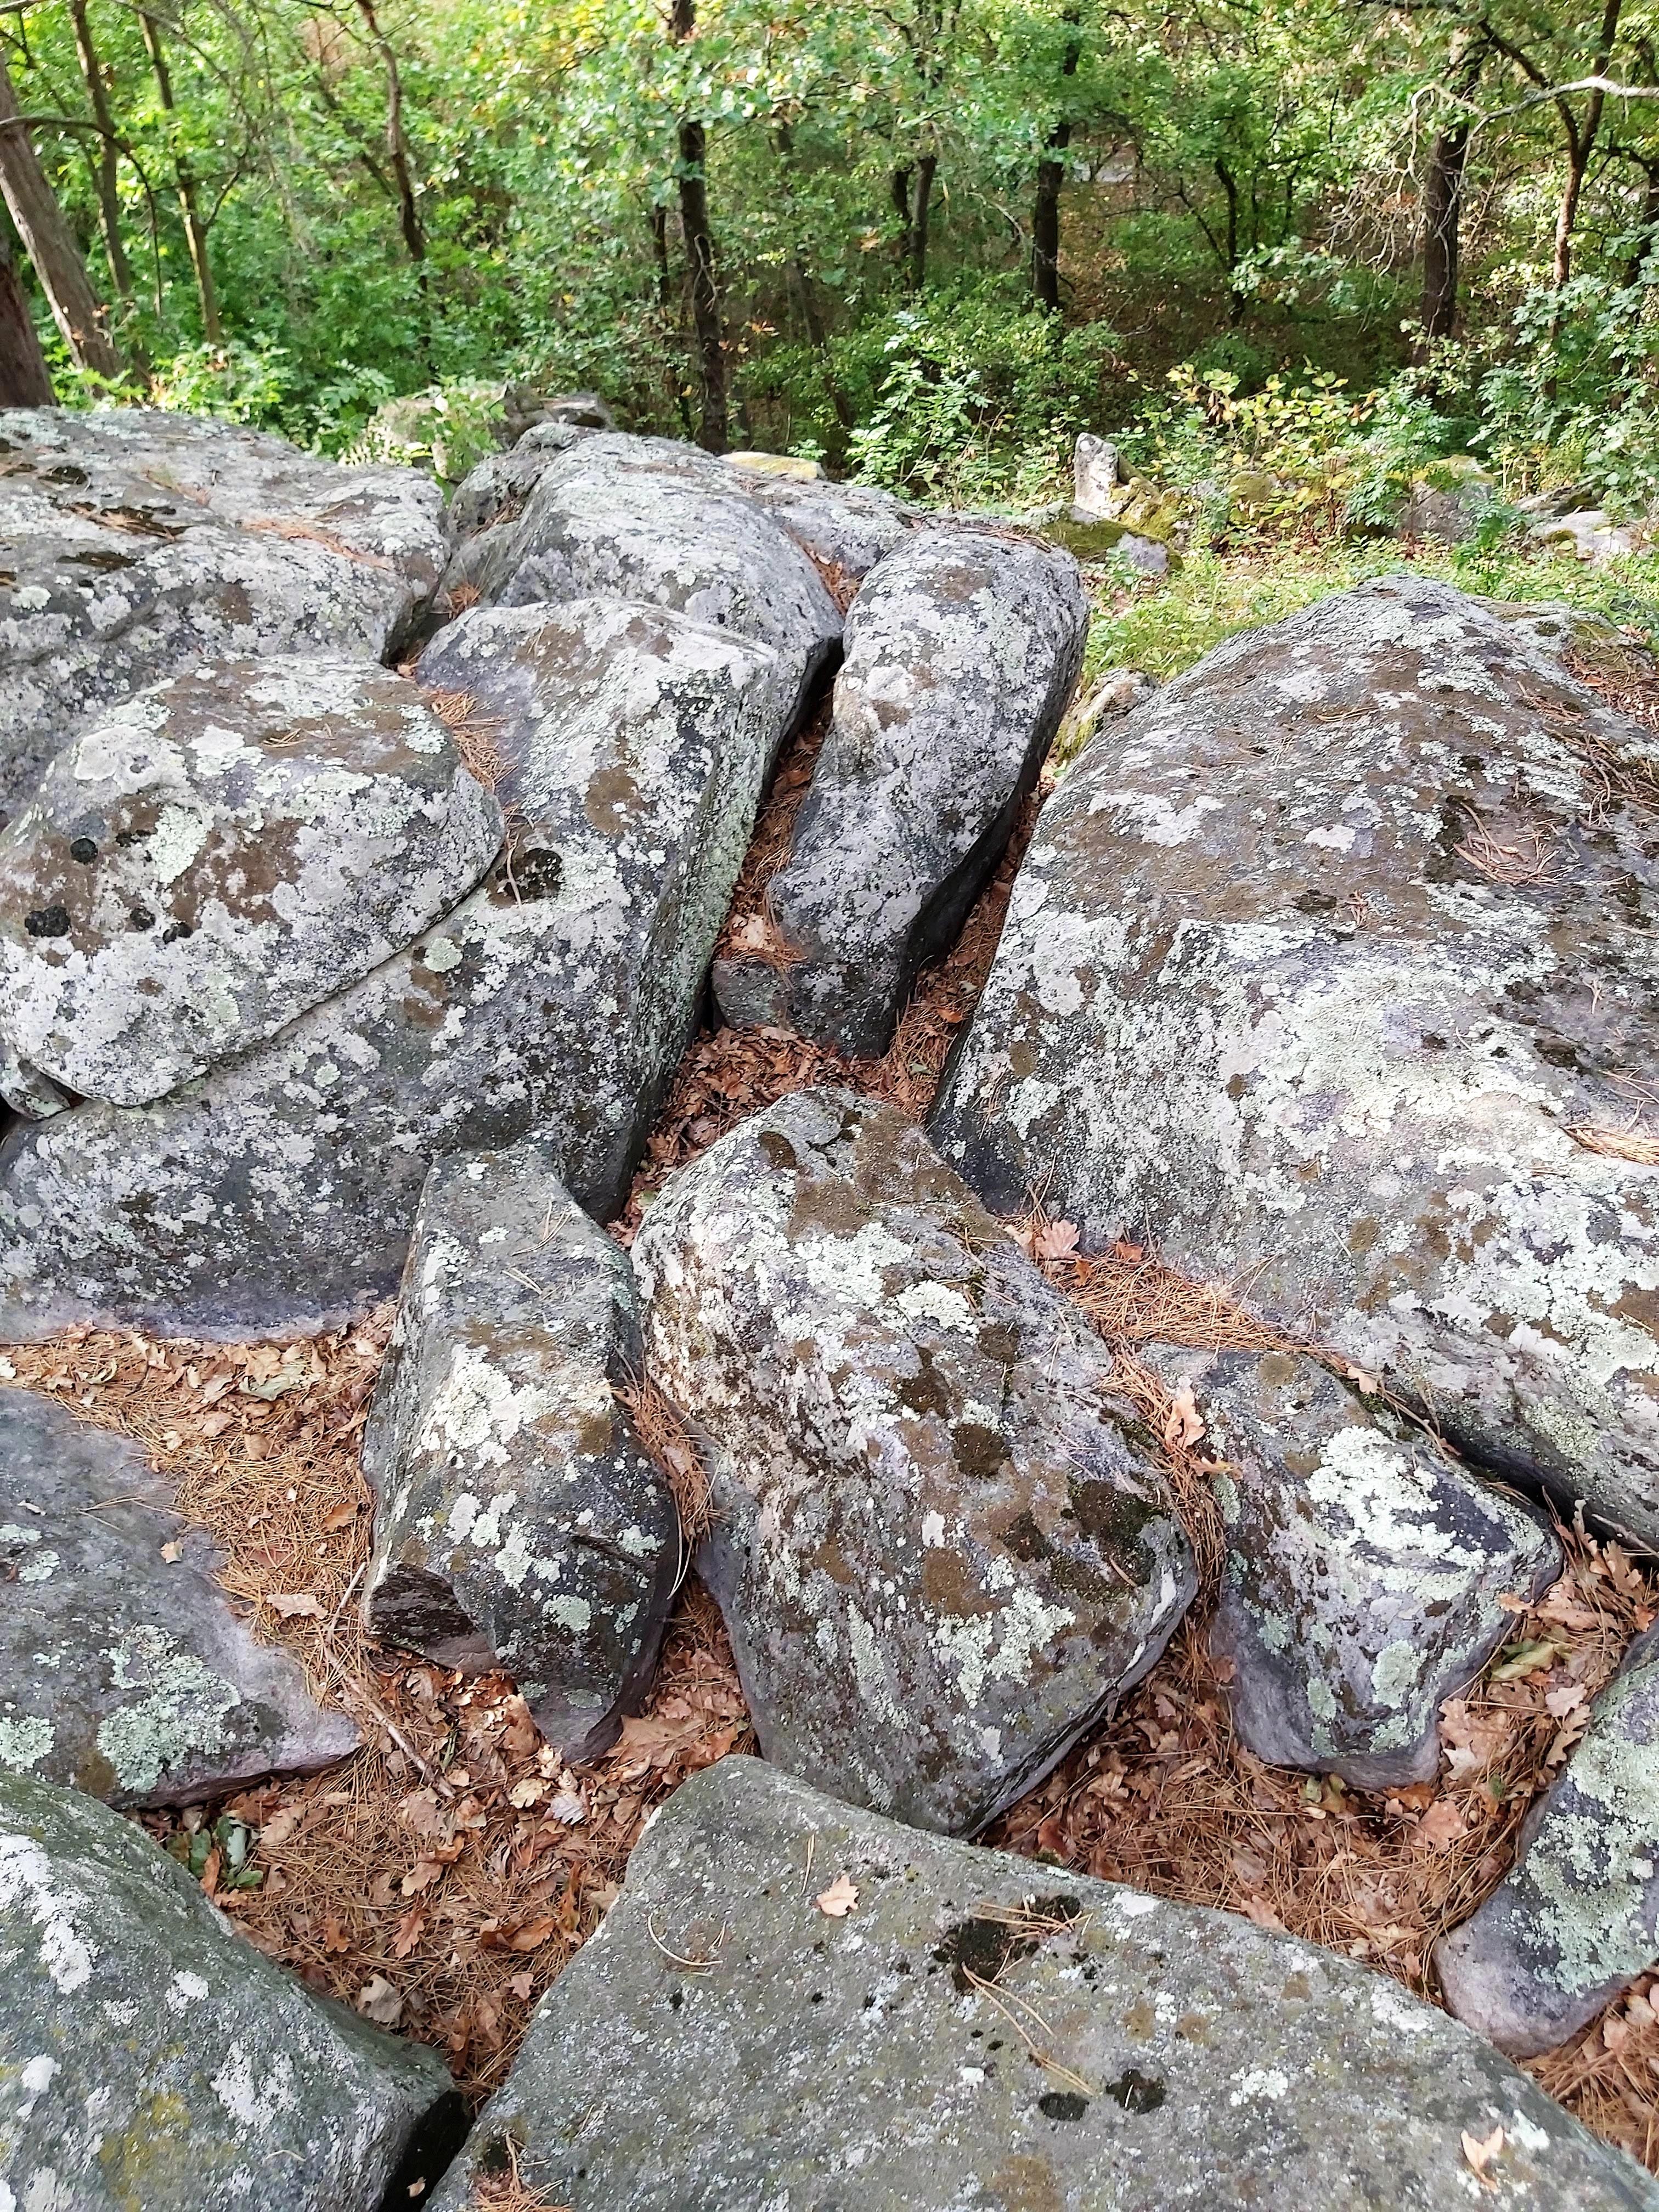 Papsapka kövek nevü látnivaló 4. számú fényképe